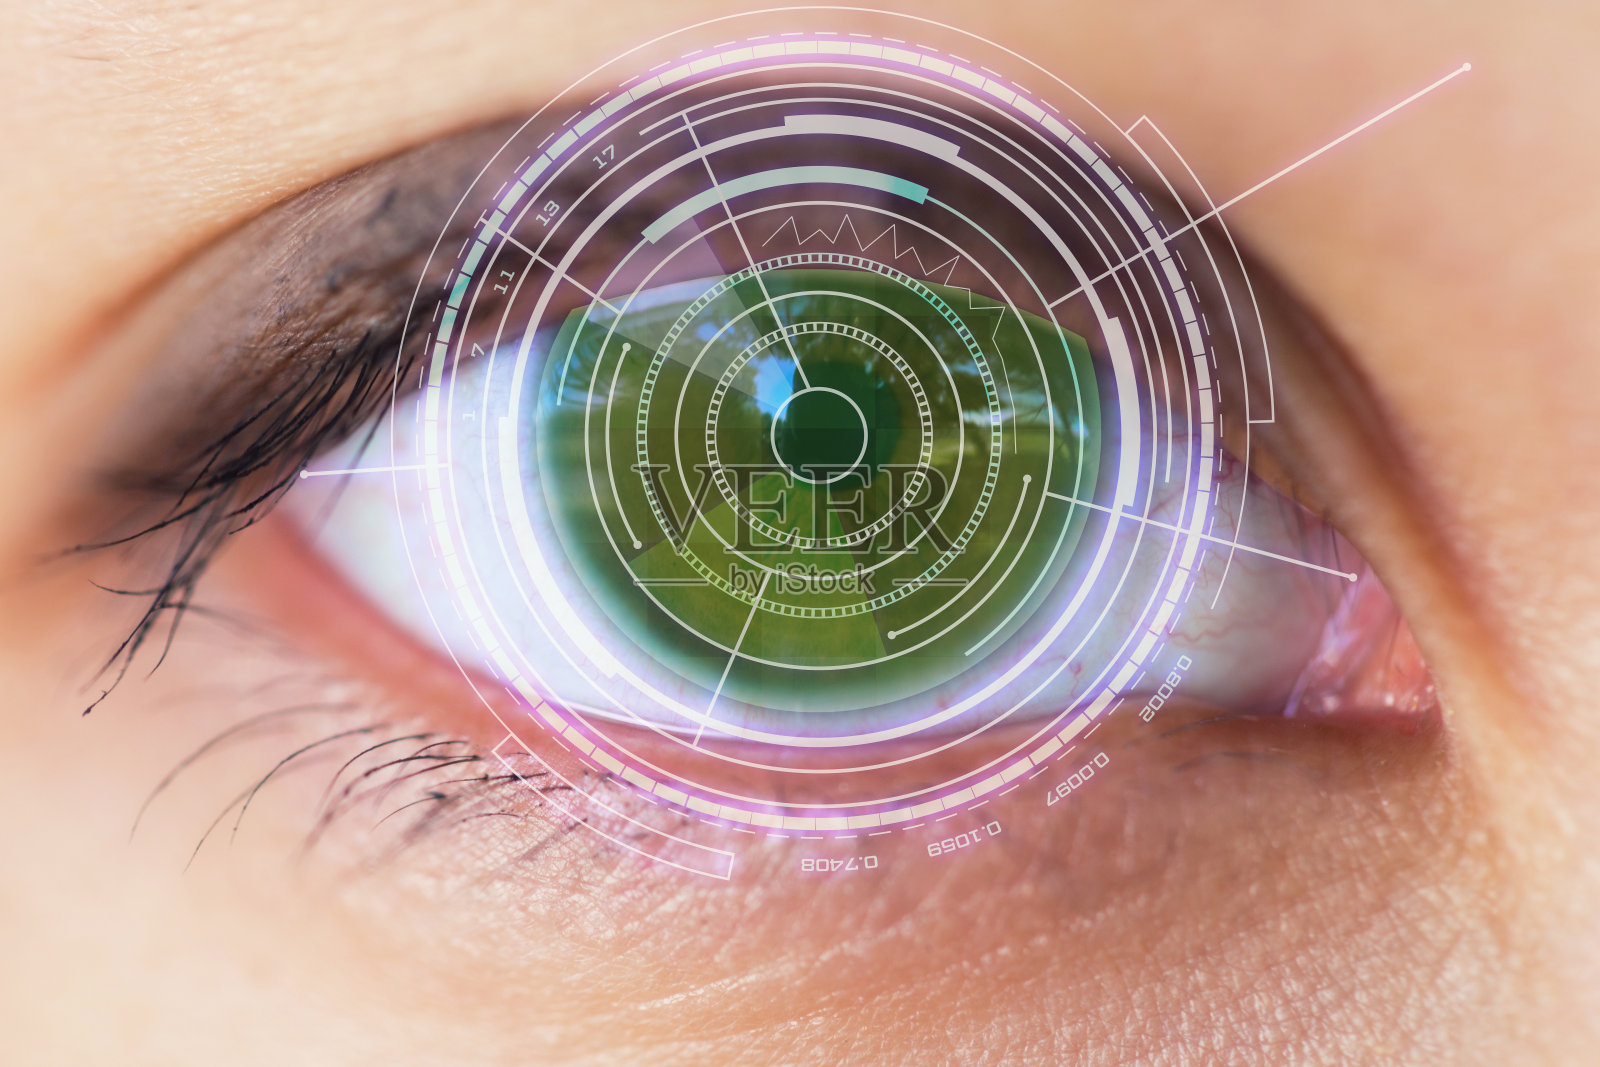 一名妇女的眼睛被视网膜扫描仪扫描照片摄影图片